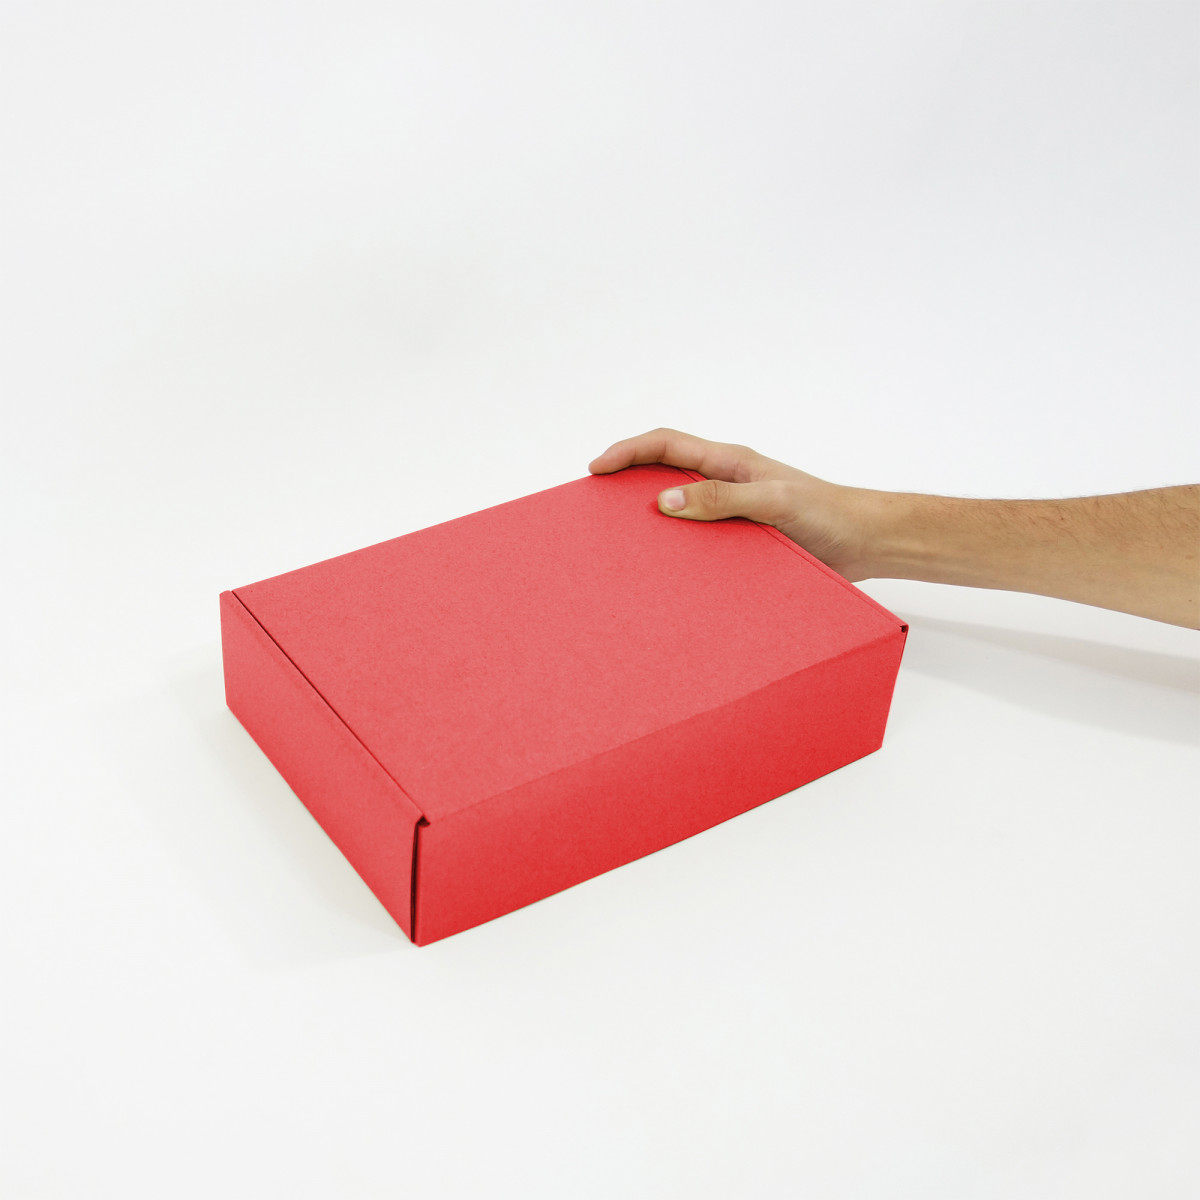 Caja de cartón para envios, autoarmables 30x20x8 KRAFT. Personalizadas con  su logo.